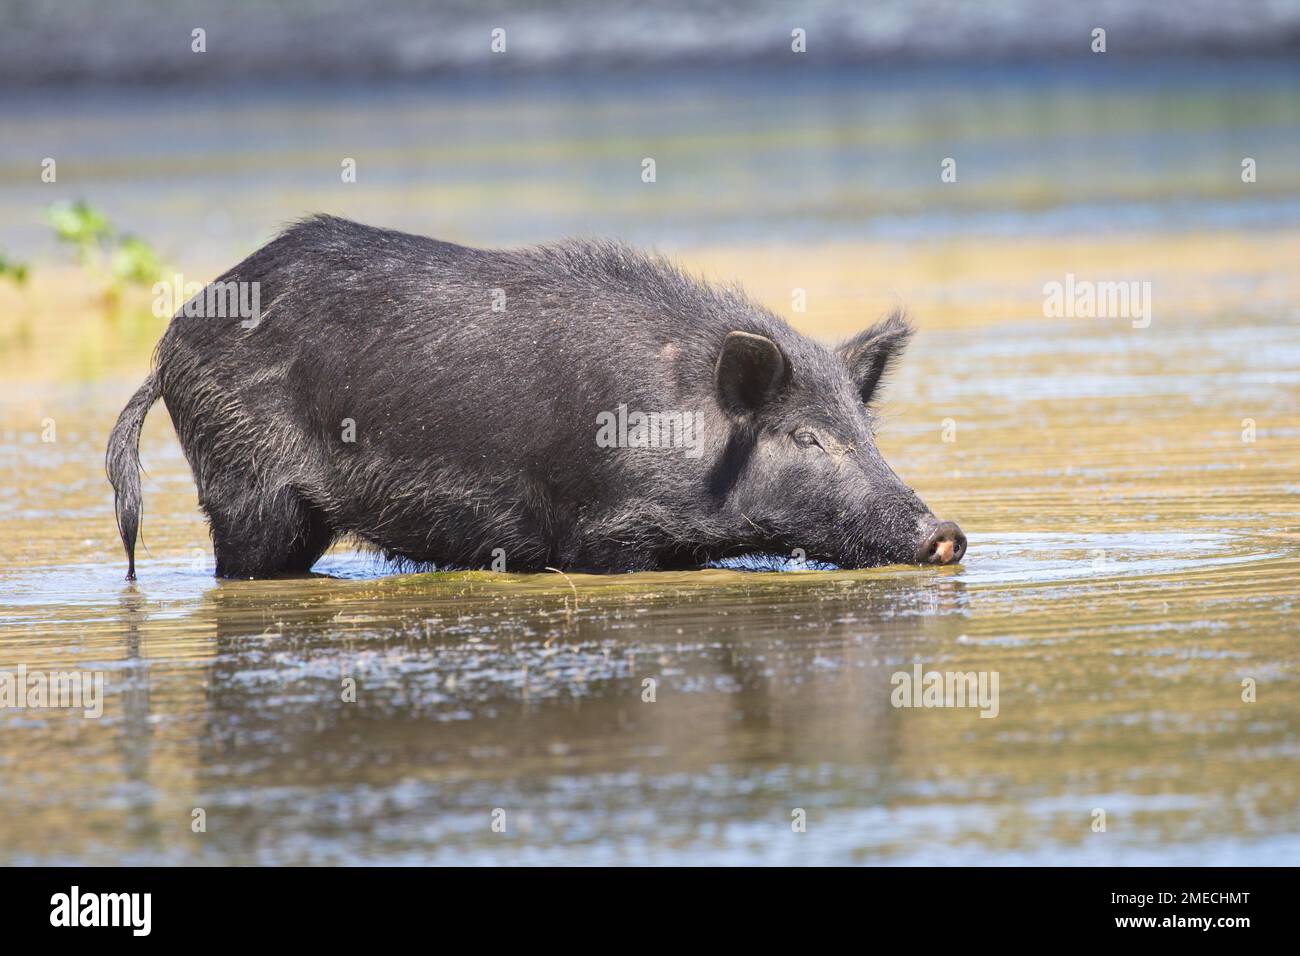 California Wild Boar/Feral Pig Hybrid. Gli spagnoli e i russi introdussero i maiali domestici in California nel 1700, molti dei quali trasformarono in ferallo. UE Foto Stock